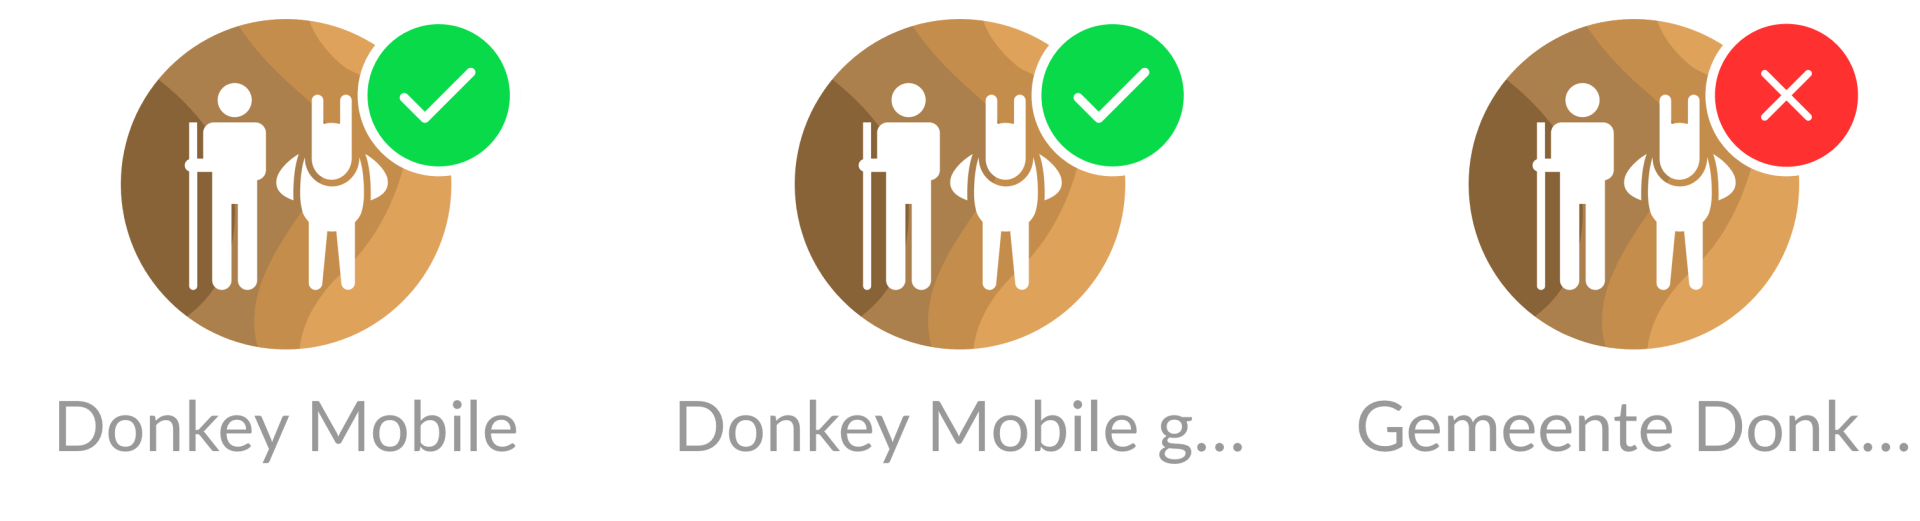 donkey mobile logo